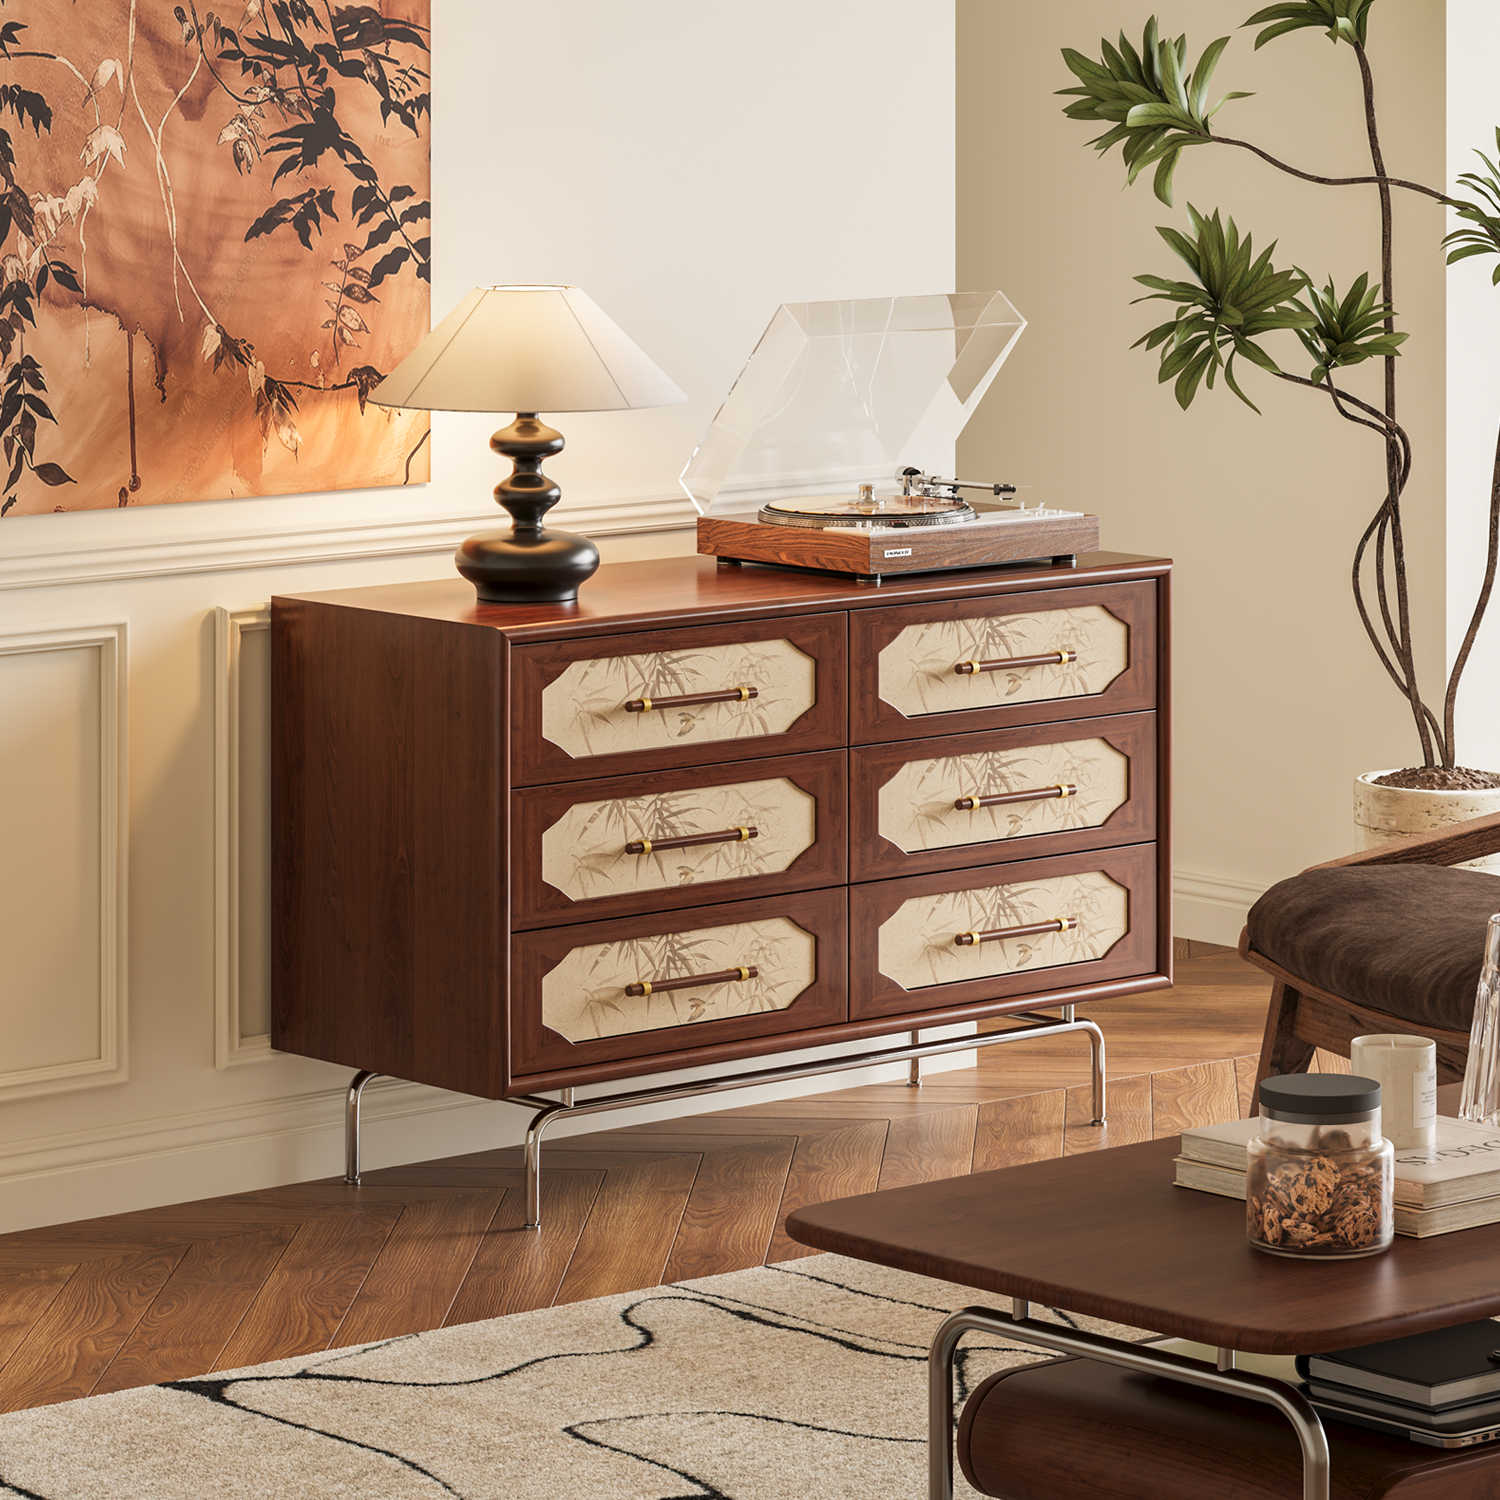 谷及 中古美式实木竹叶斗柜客厅卧室艺术风格储物柜可移动收纳柜